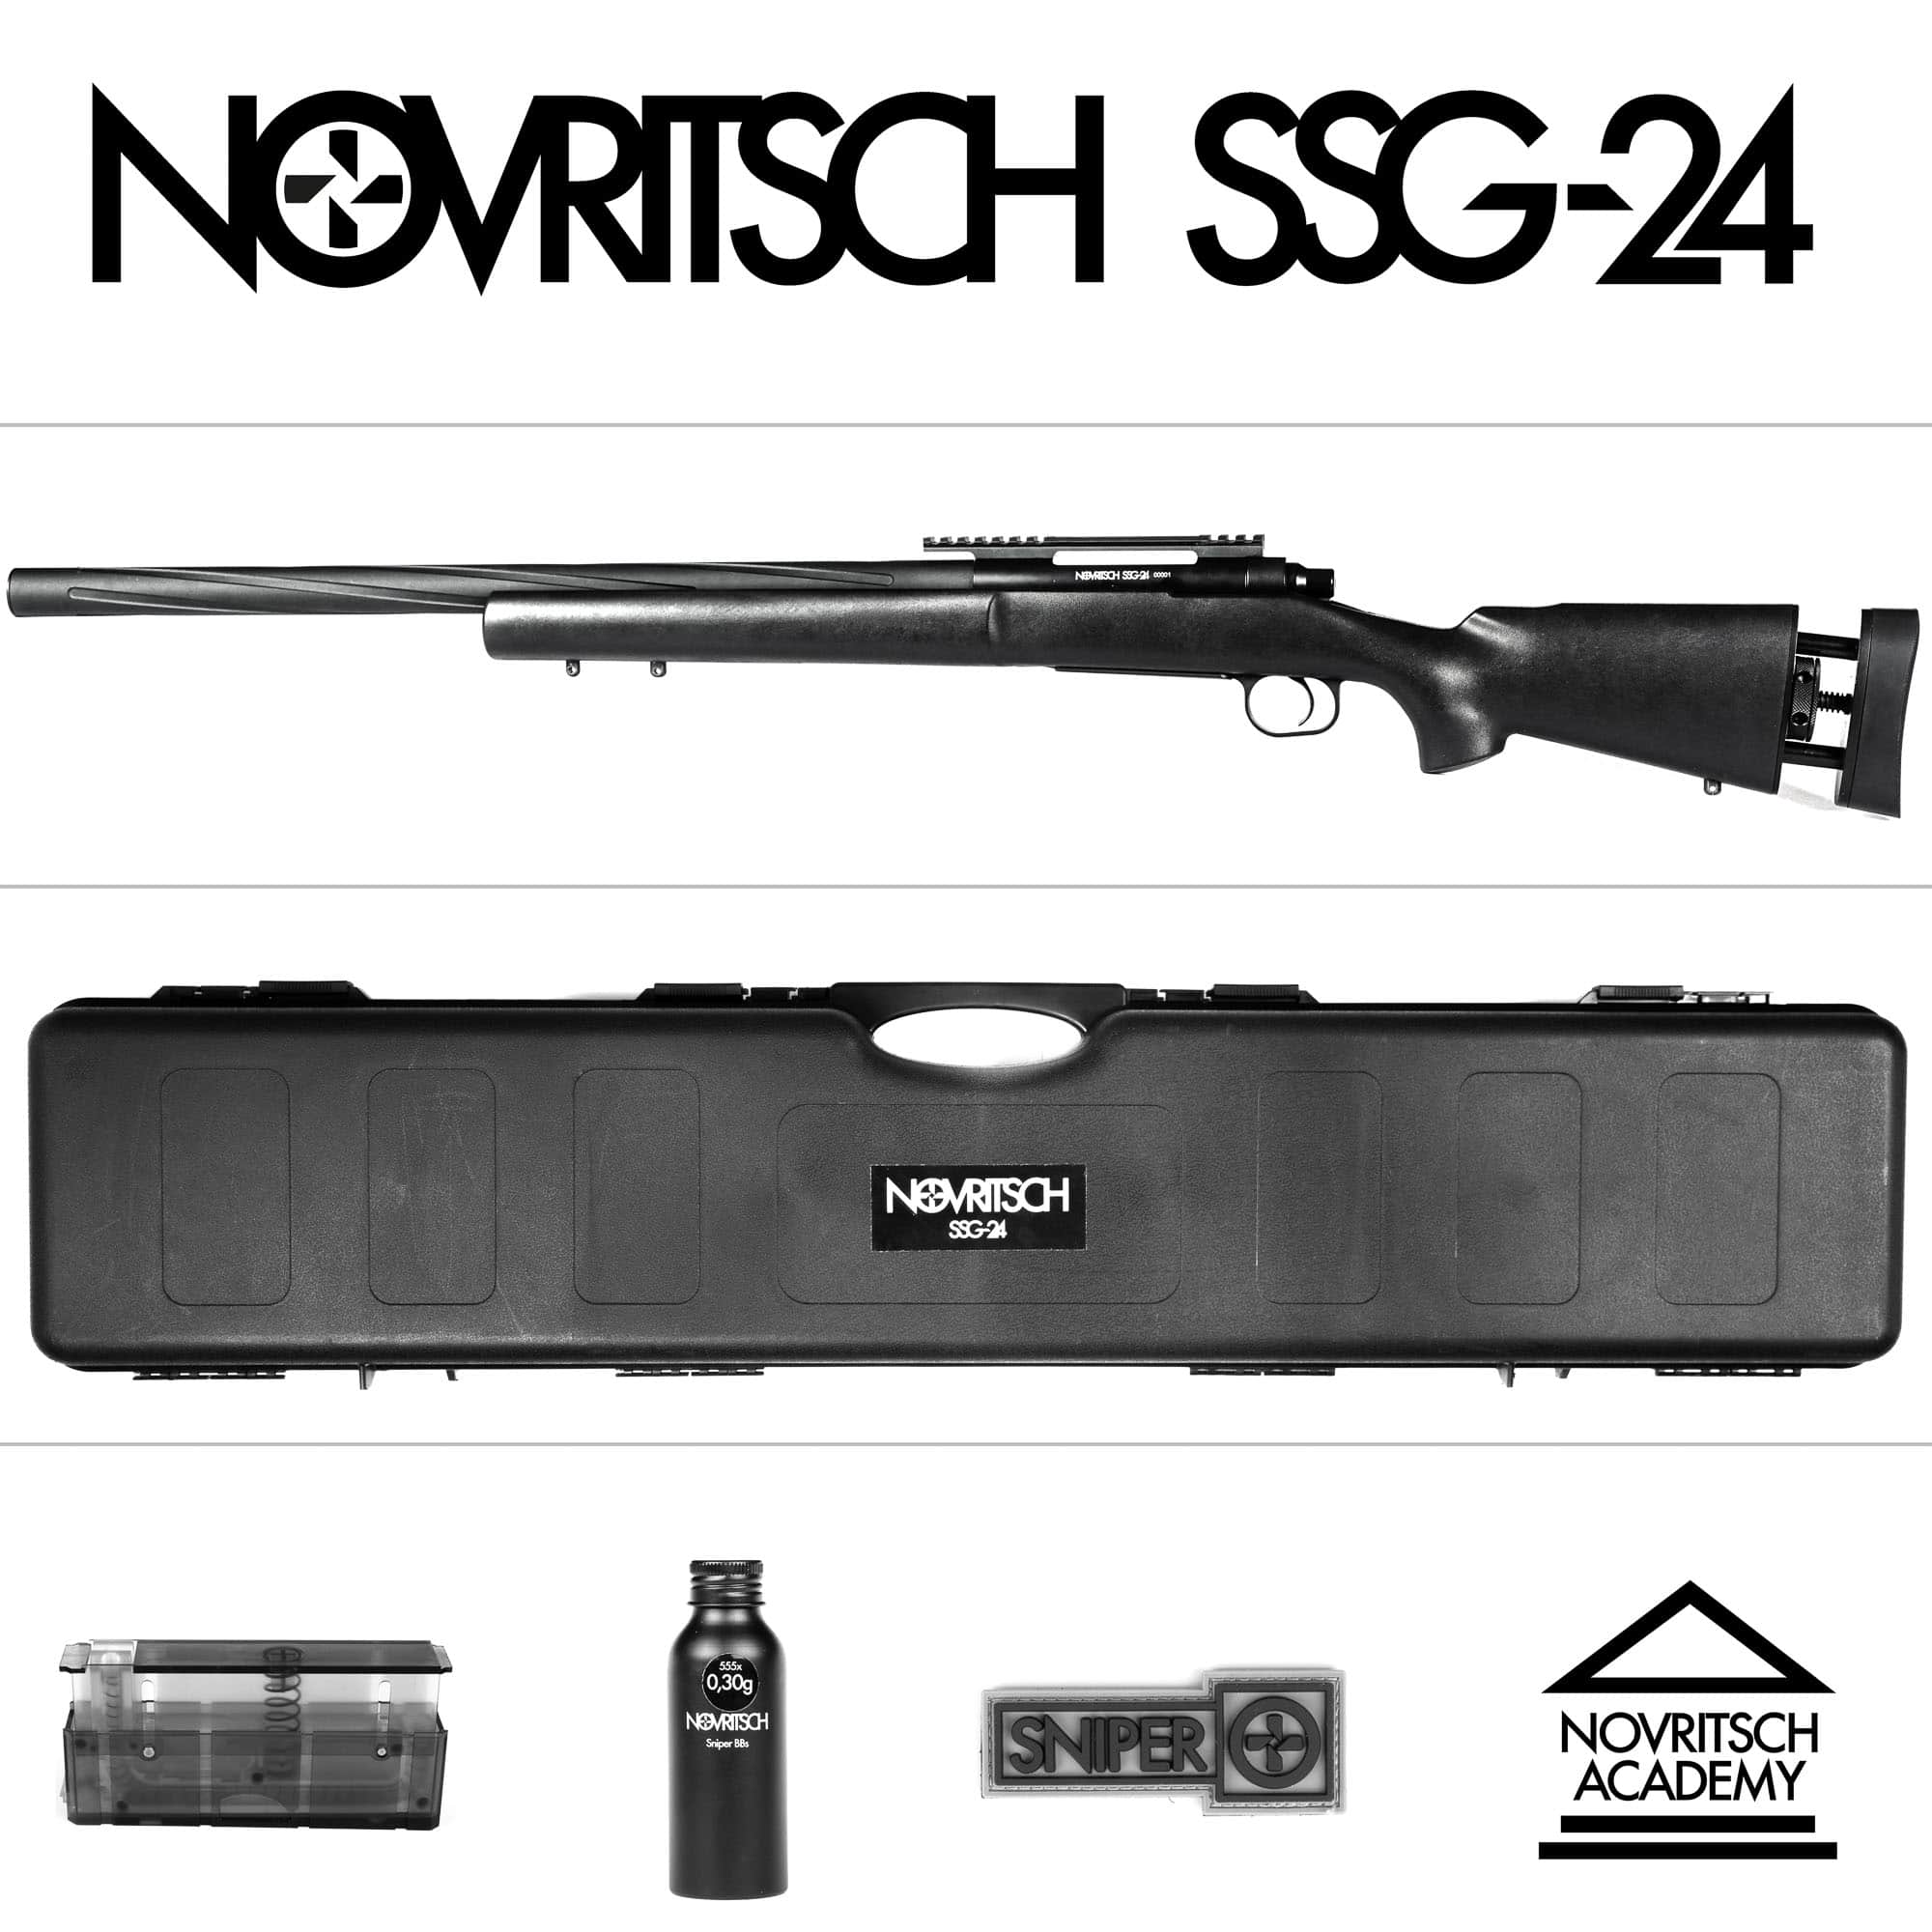 Novritsch Ssg24 Airsoft Sniper Rifle Novritsch Usa